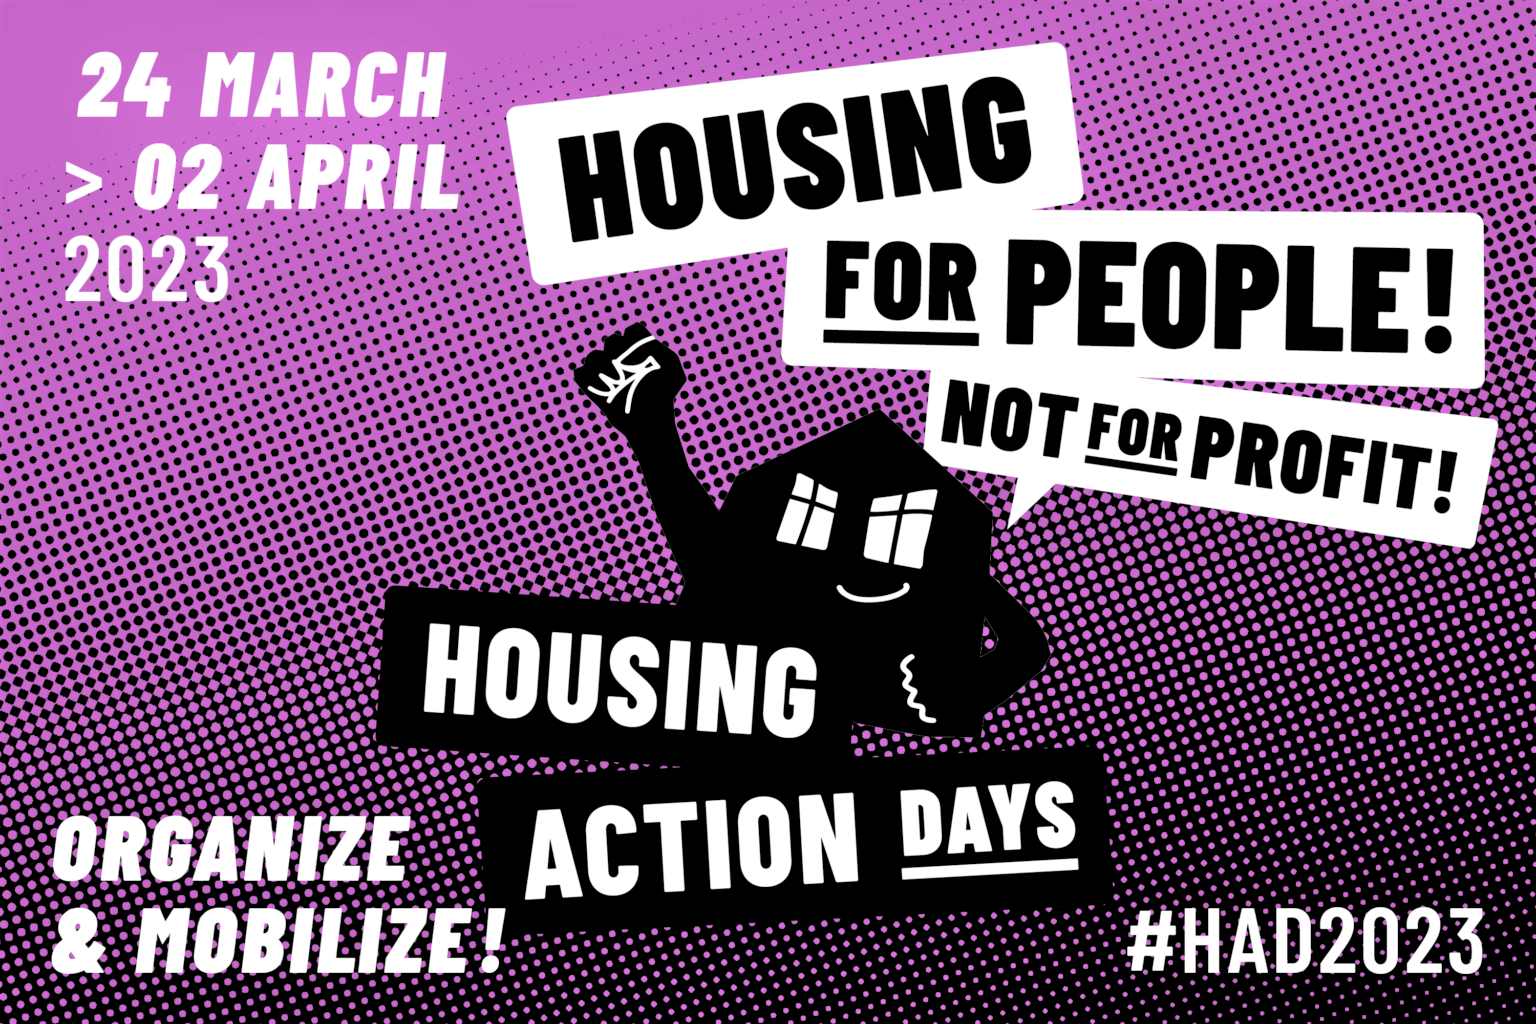 manifestação - housing for people, not for profit - habitação - dignidade - cidade - cidadania - justiça social - imobiliário - casa - casas - morada - preço - especulação - braga - porto - lisboa 